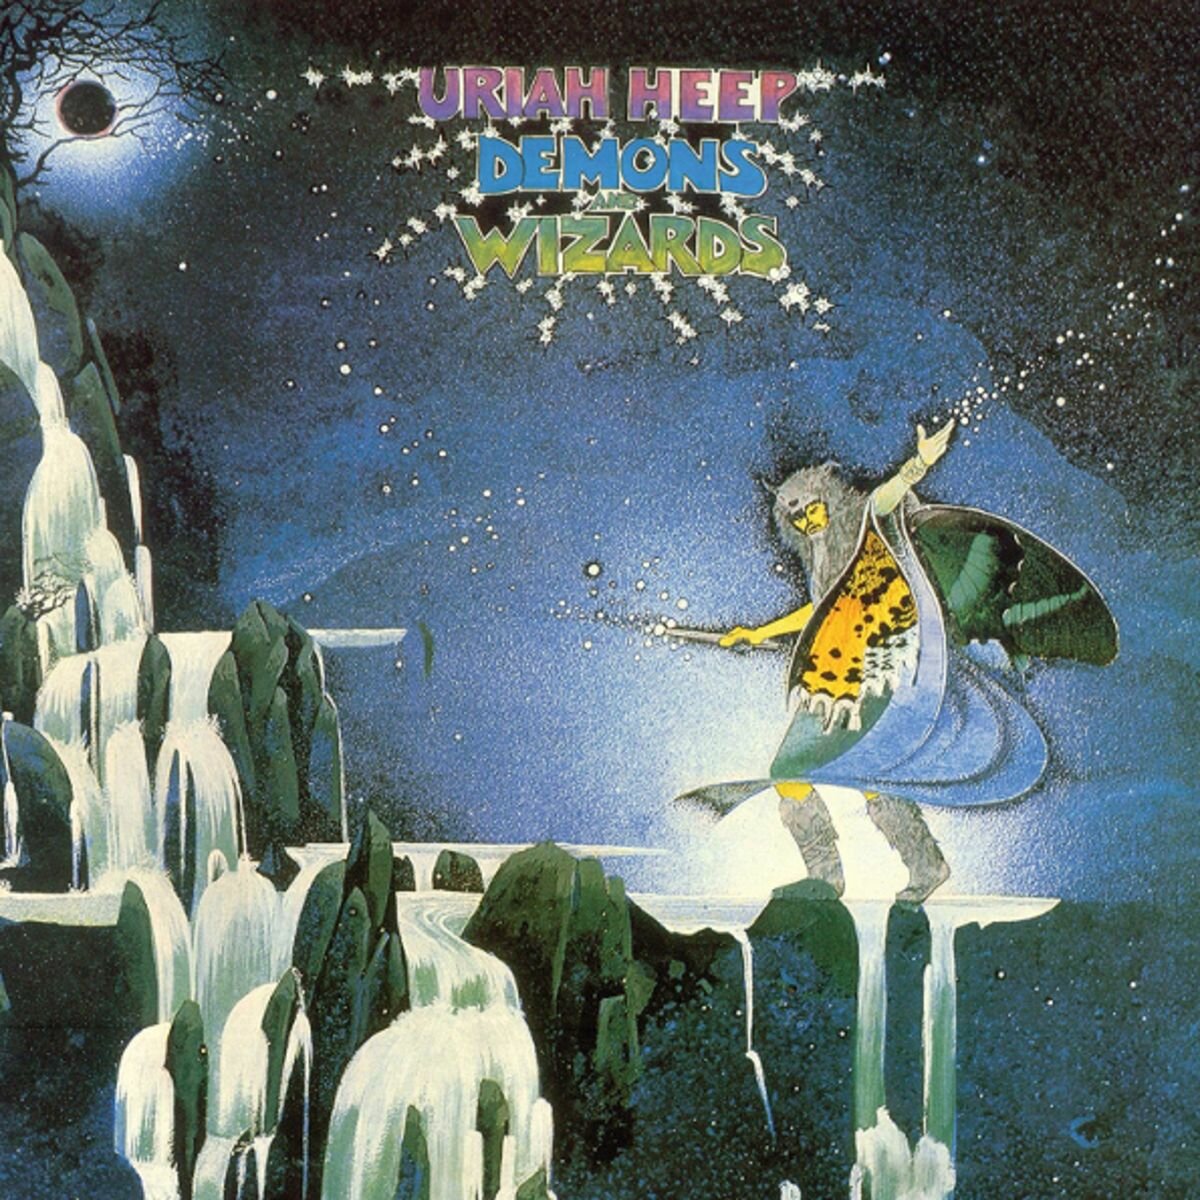 Виниловая пластинка Uriah Heep "Demons And Wizards"